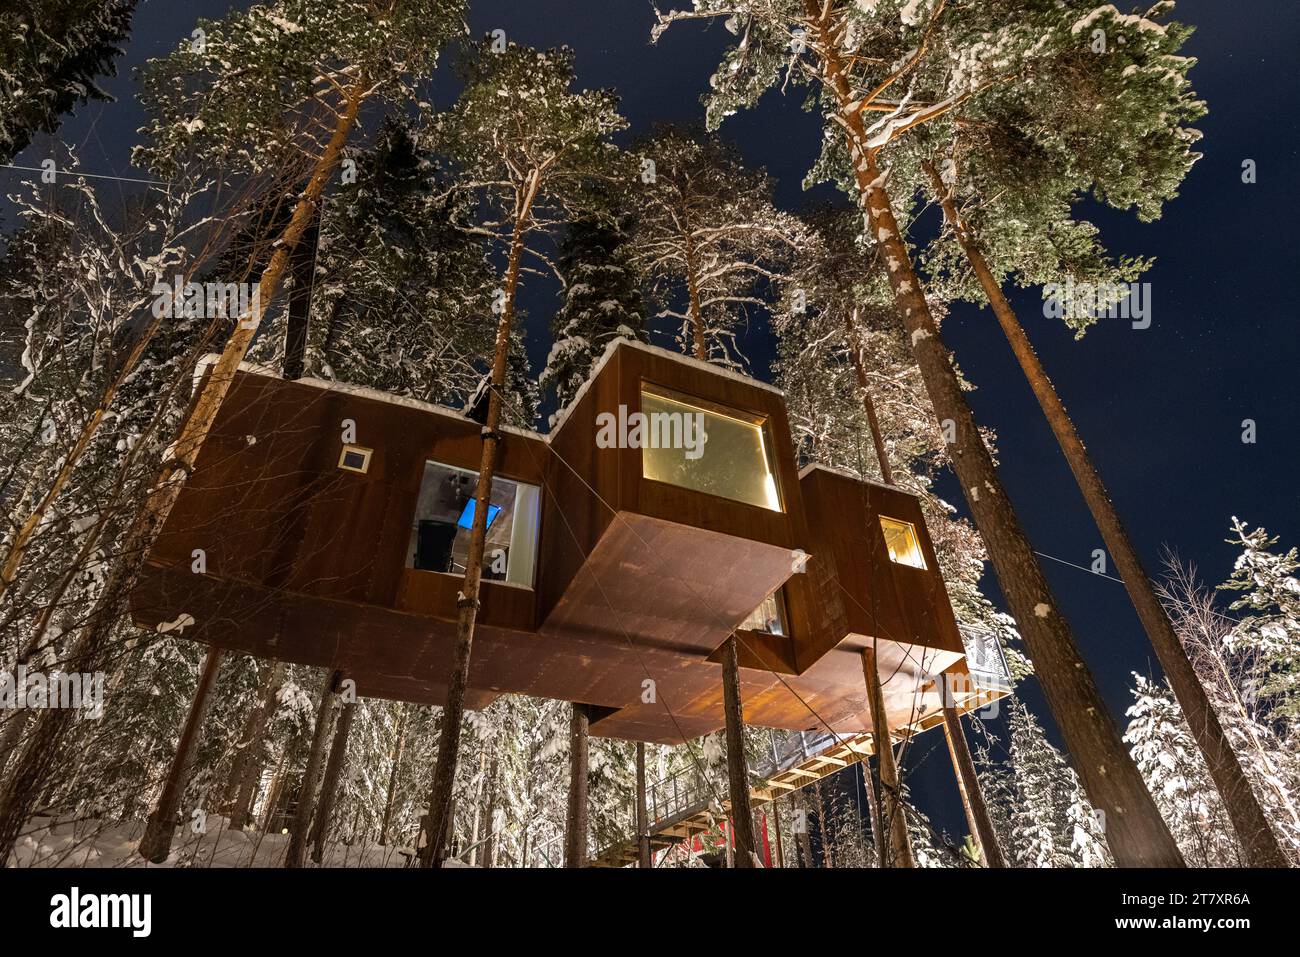 Vista notturna di un cottage sospeso in legno nella foresta ricoperta di neve, Harads, Lapponia, Svezia, Scandinavia, Europa Foto Stock